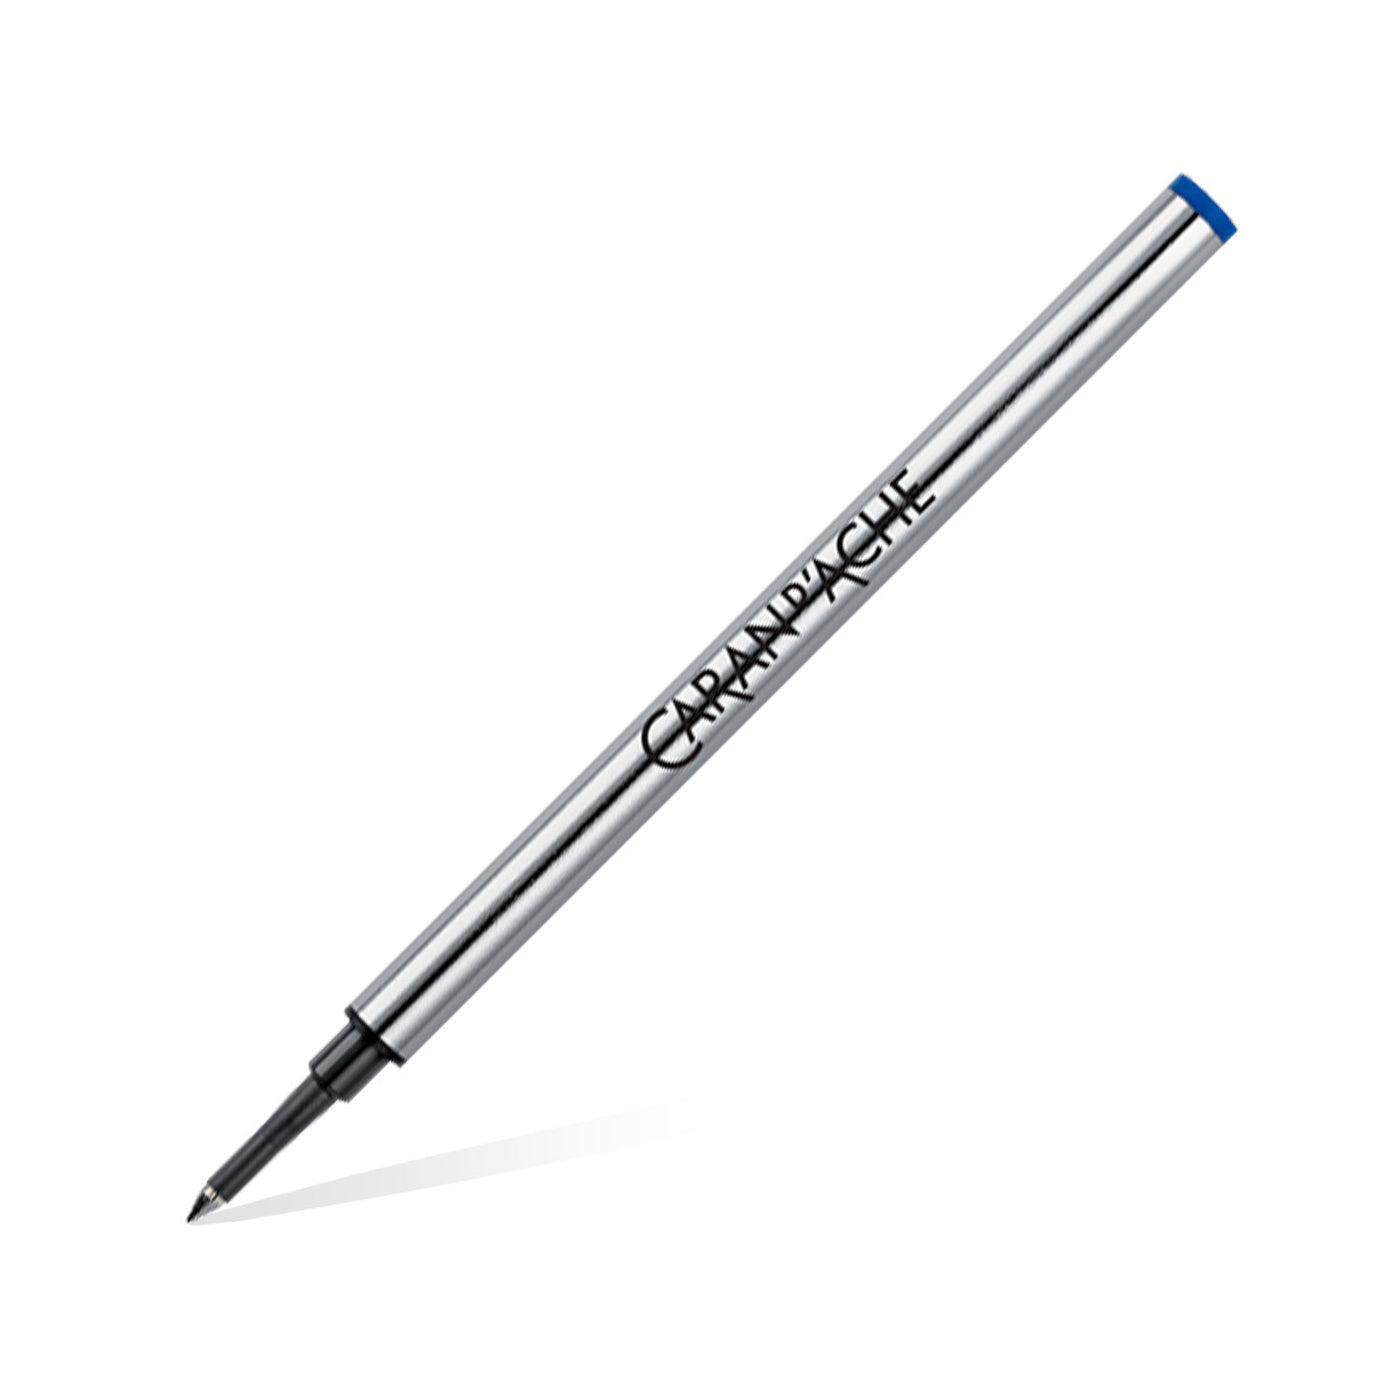 Caran d'Ache Roller Ball Pen Medium Refill - Blue 1